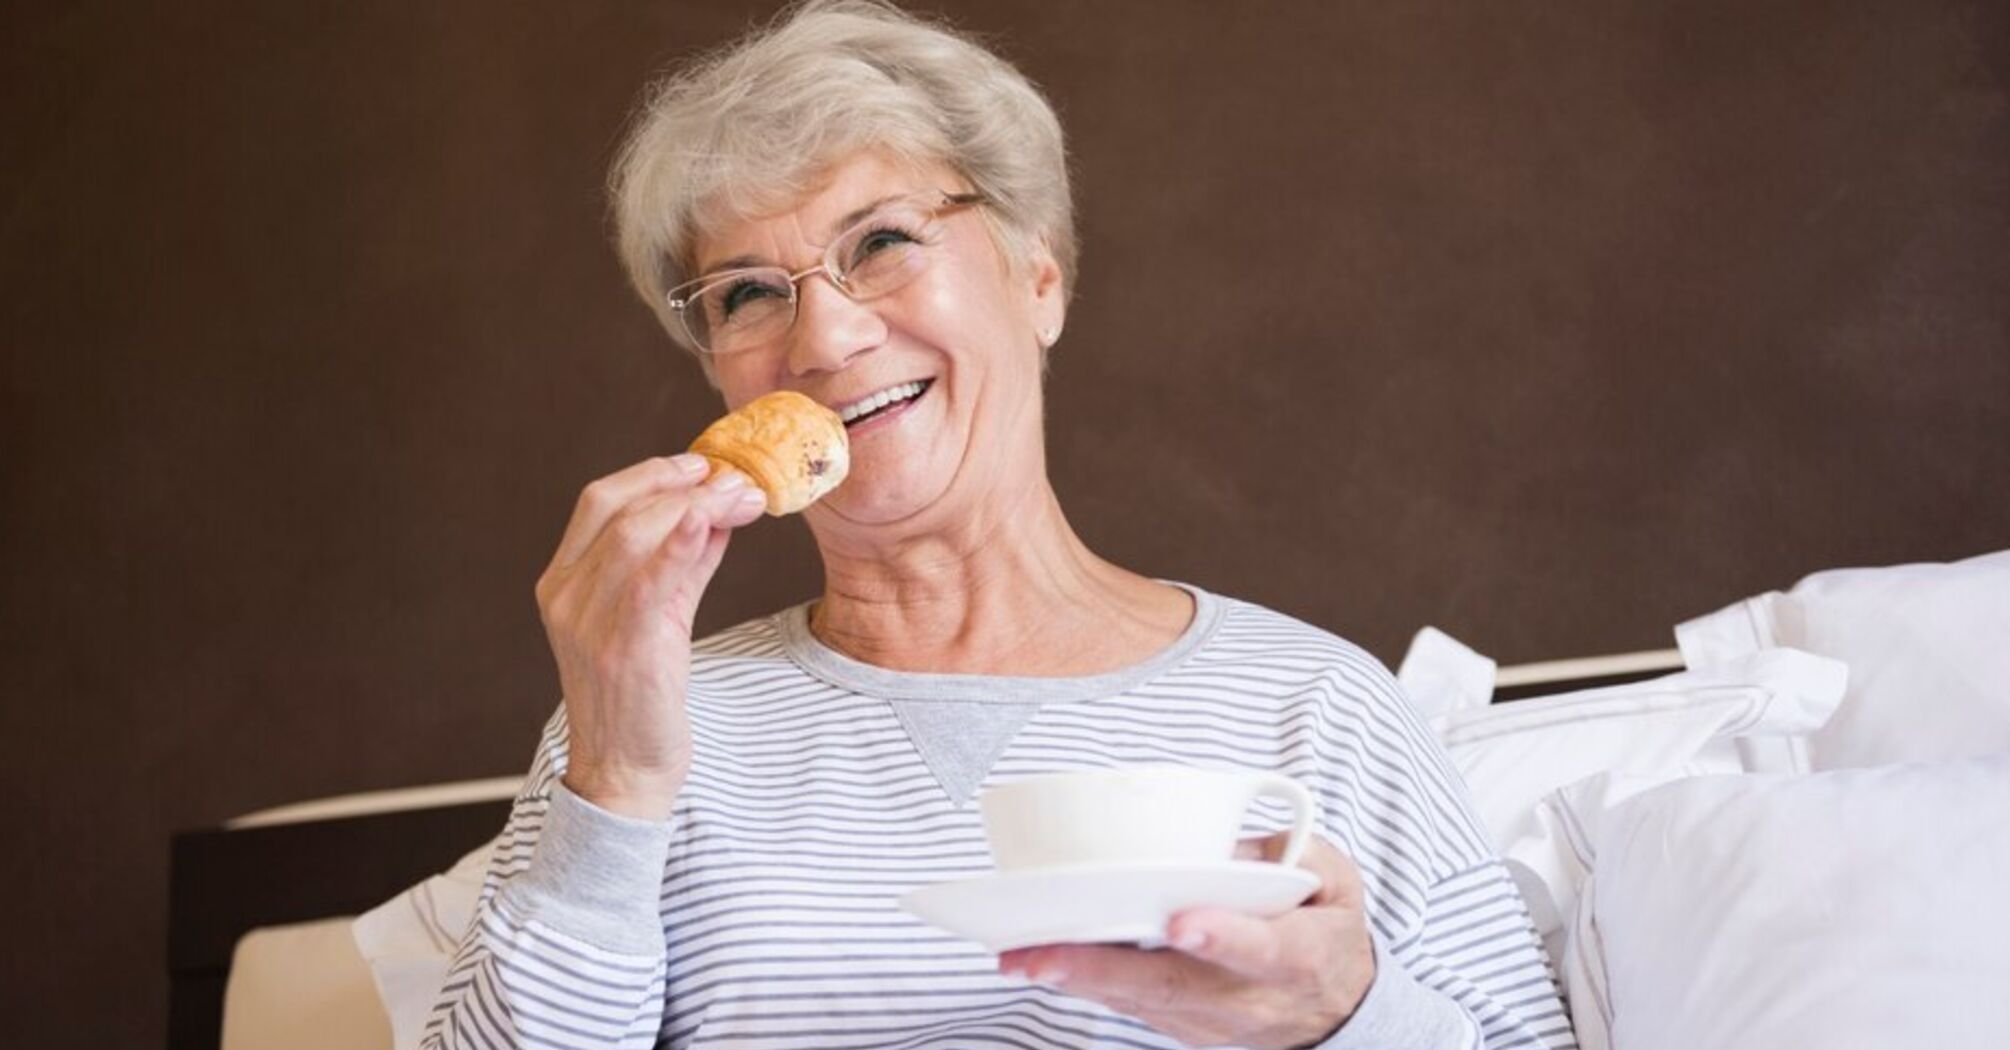 Zagrożenia żywieniowe dla osób starszych: żywność, którą należy wykluczyć z diety